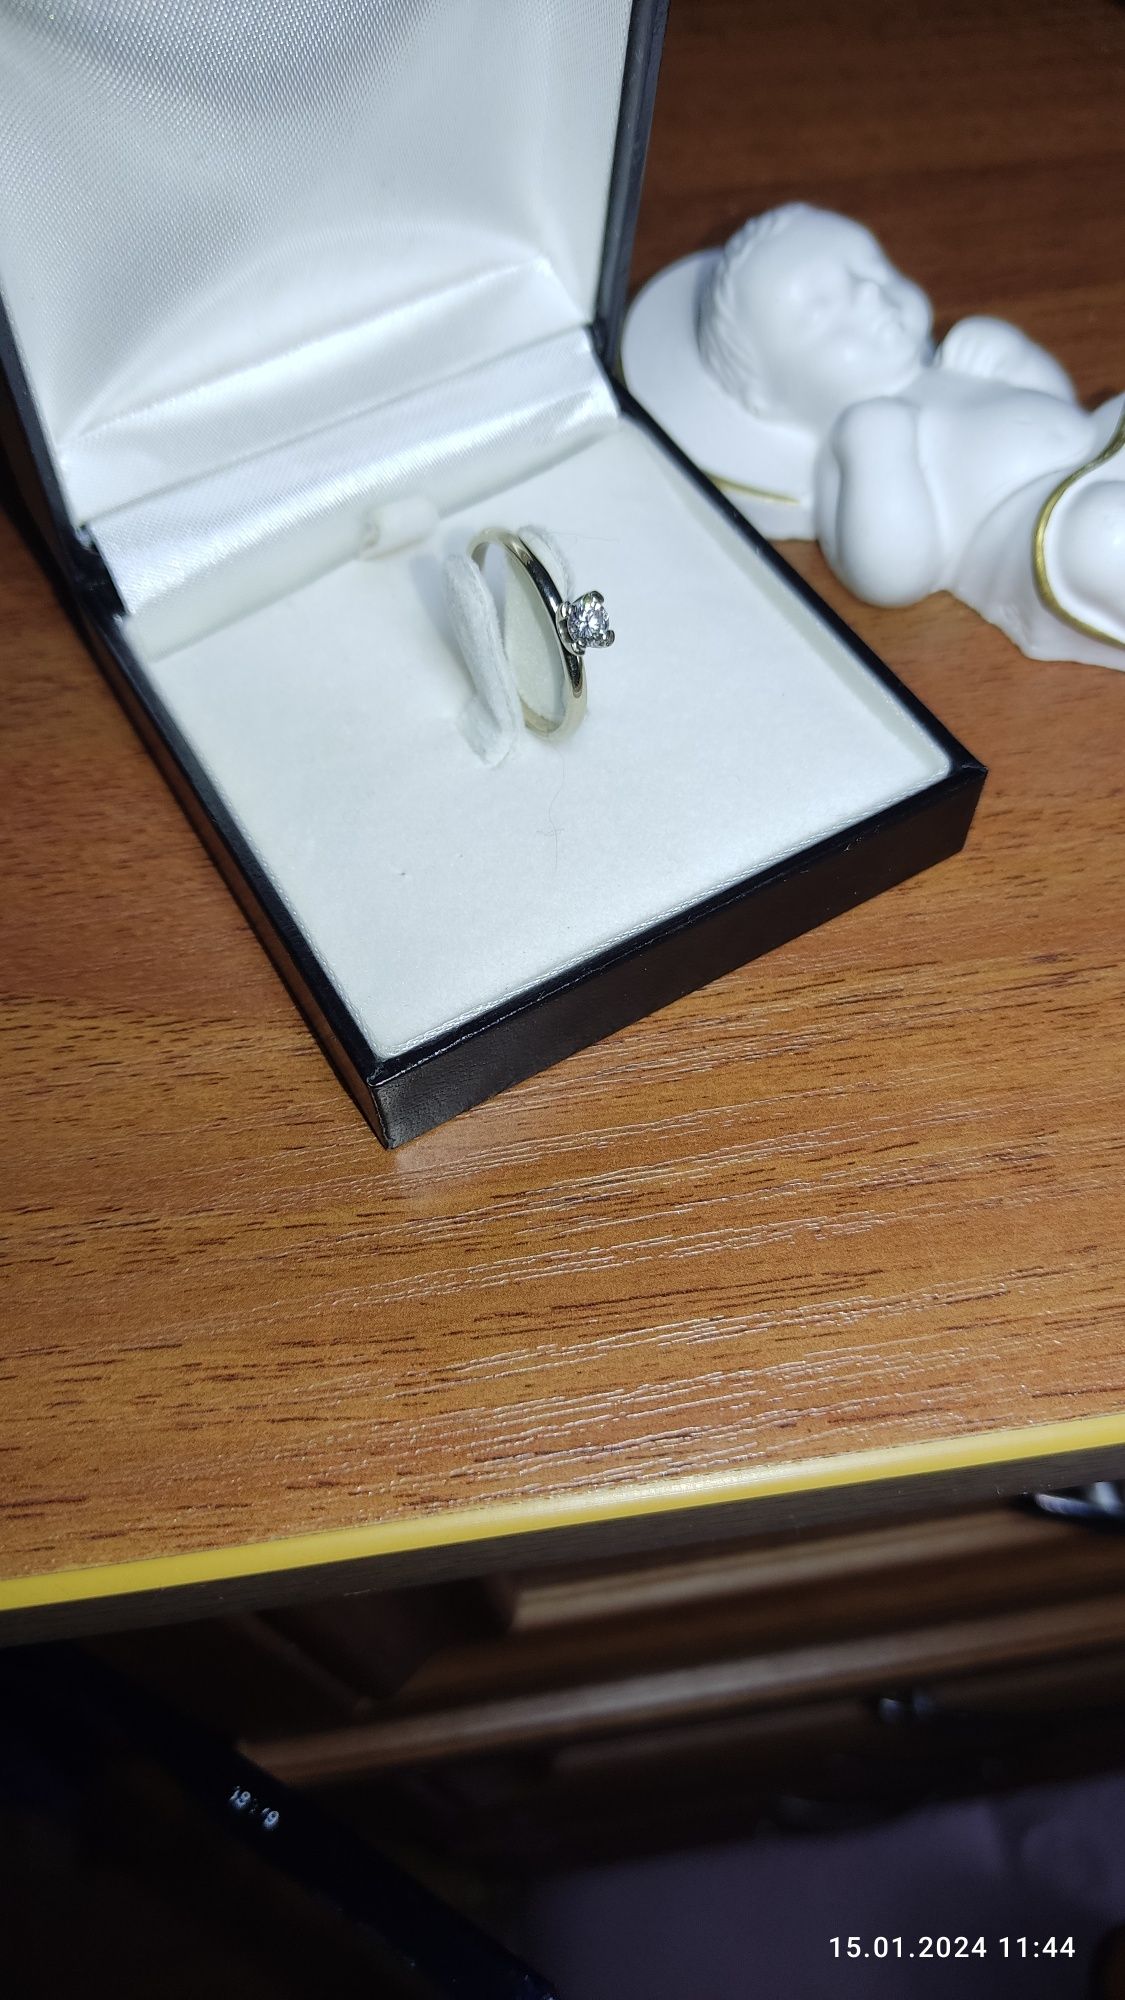 Кольцо с бриллиантом. Белое золото 585°. Размер 17,5